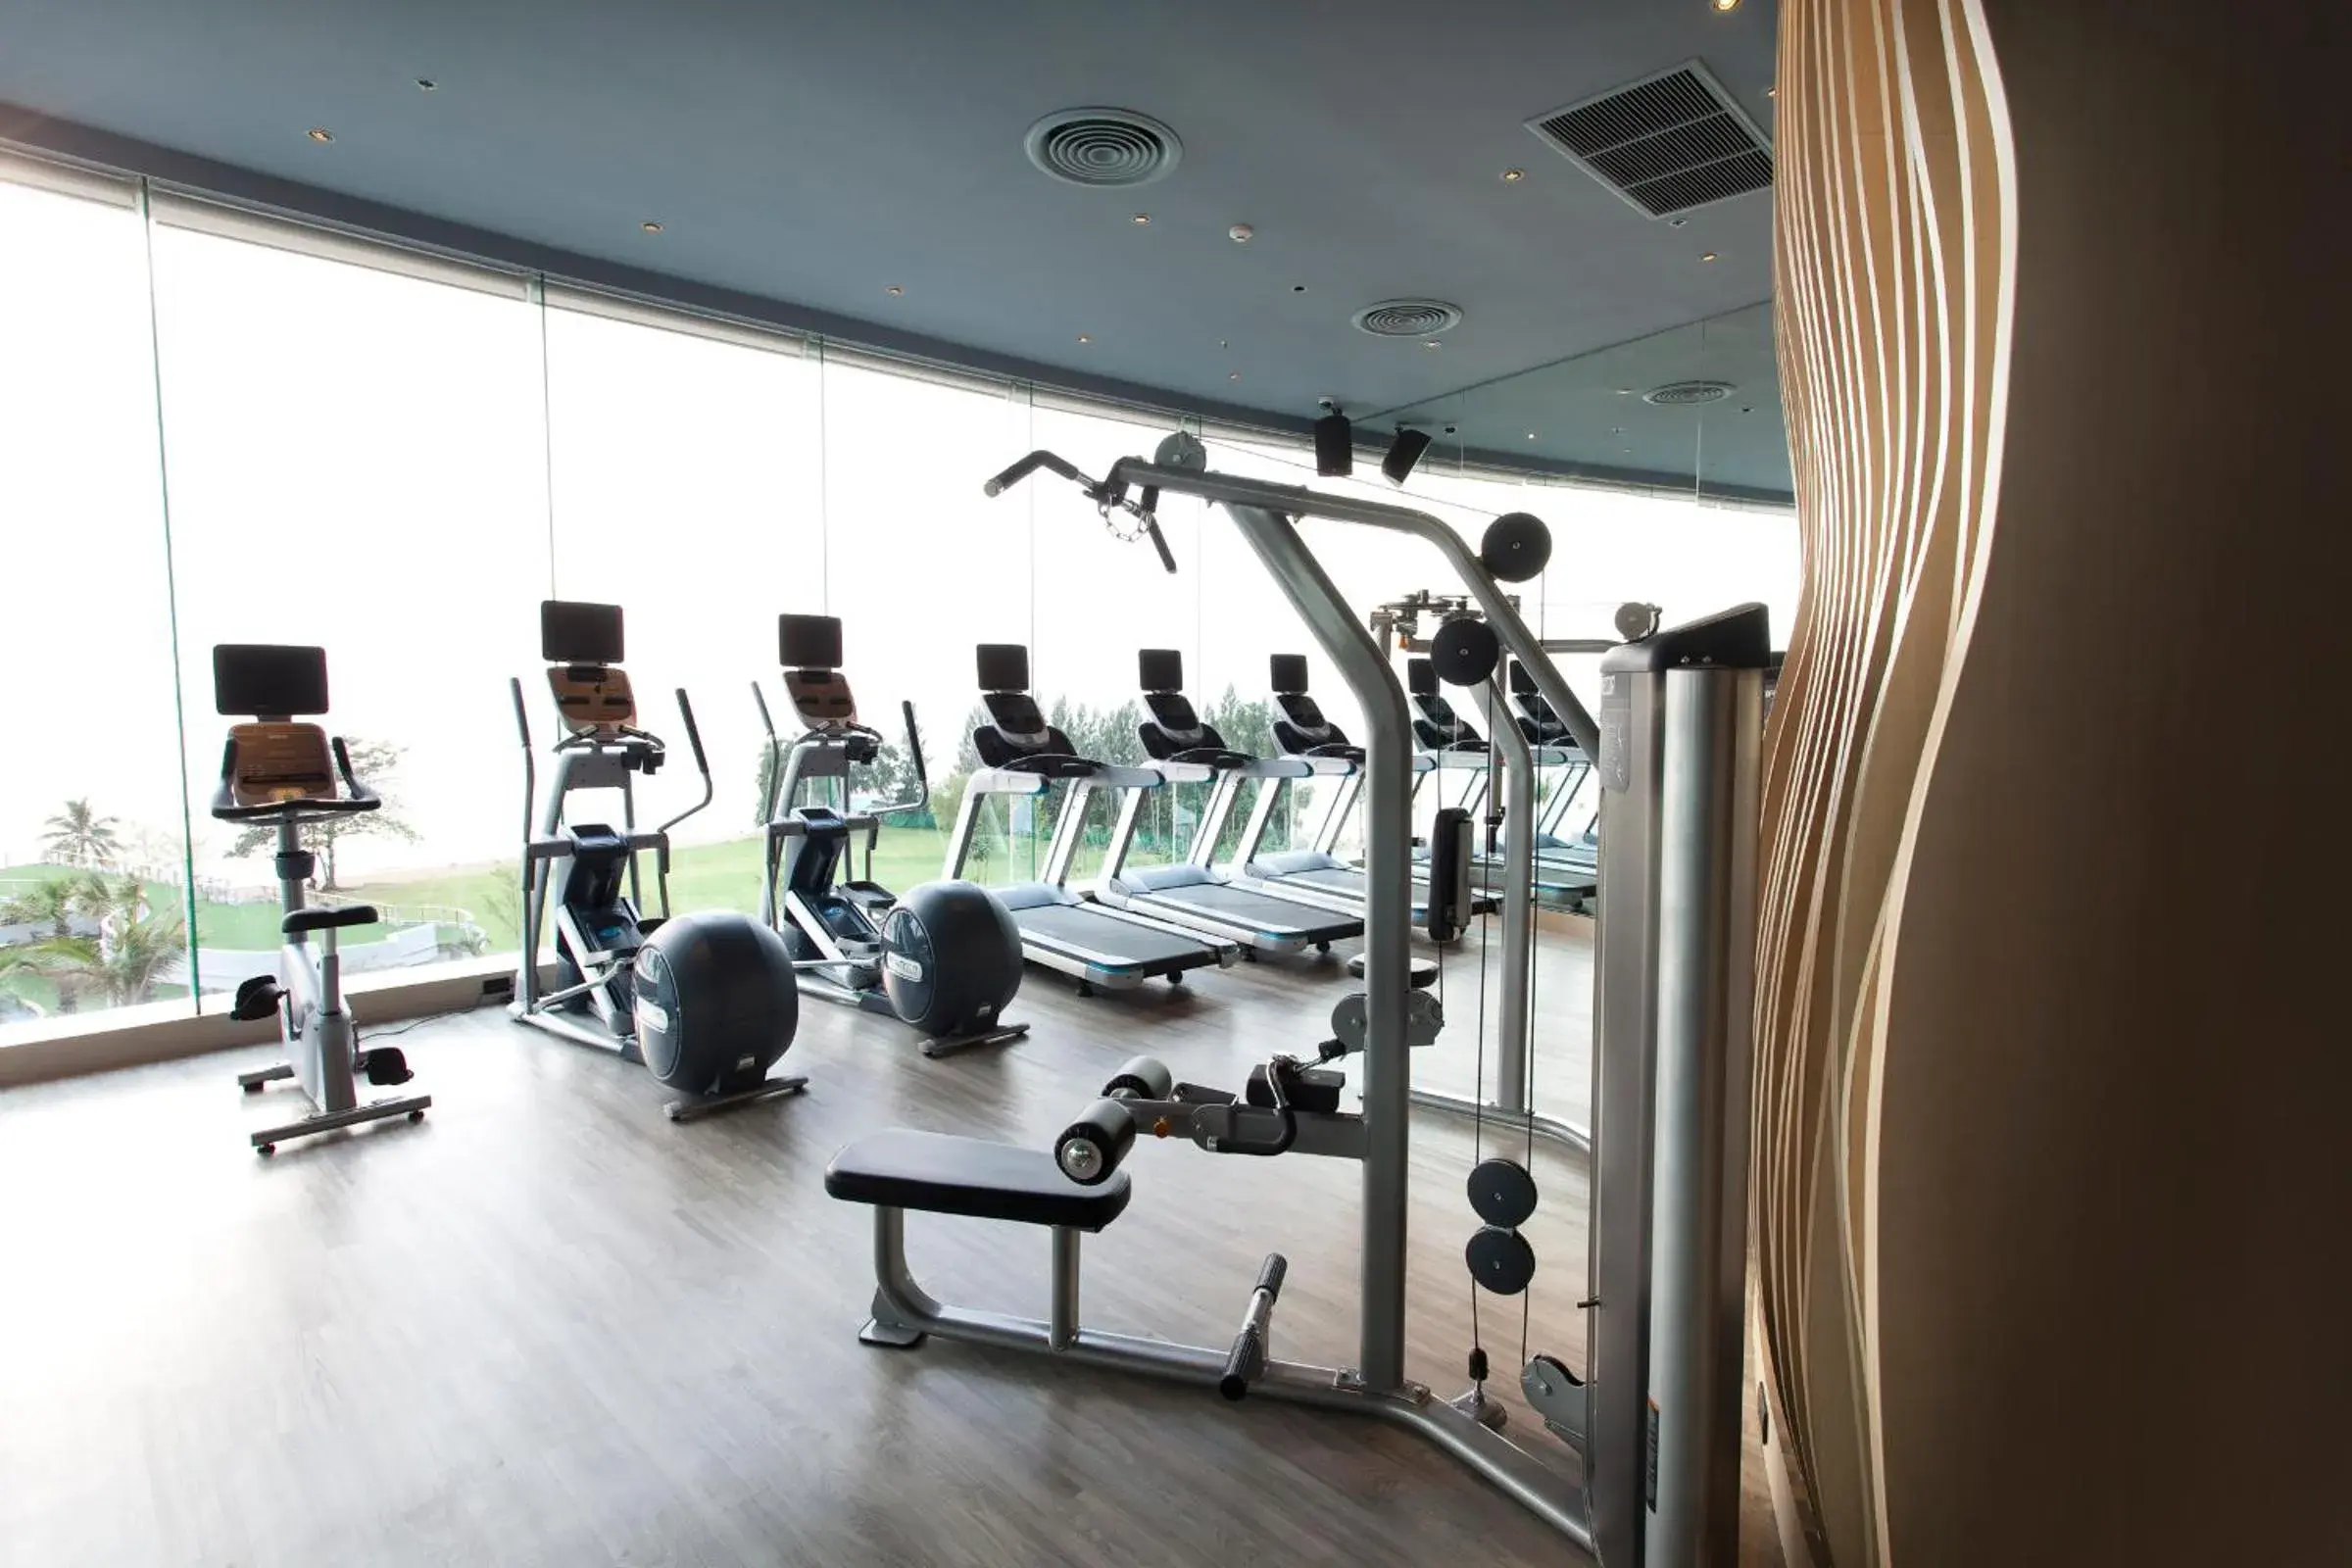 Fitness centre/facilities, Fitness Center/Facilities in Mövenpick Siam Hotel Na Jomtien Pattaya